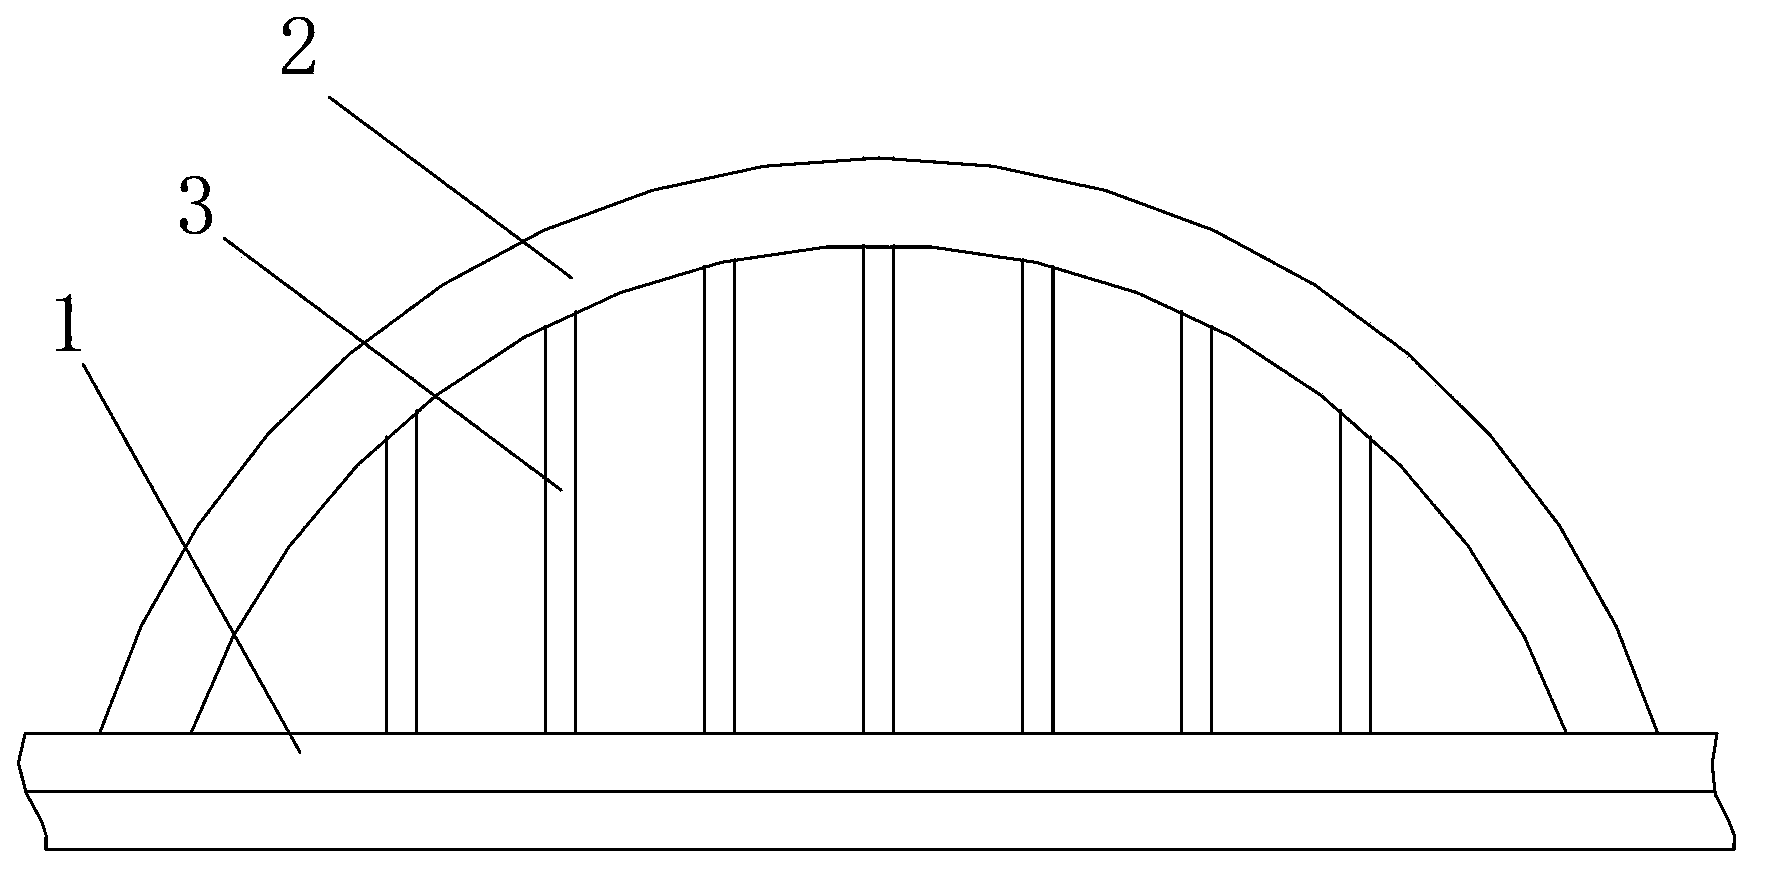 Reinforced two-path bridge